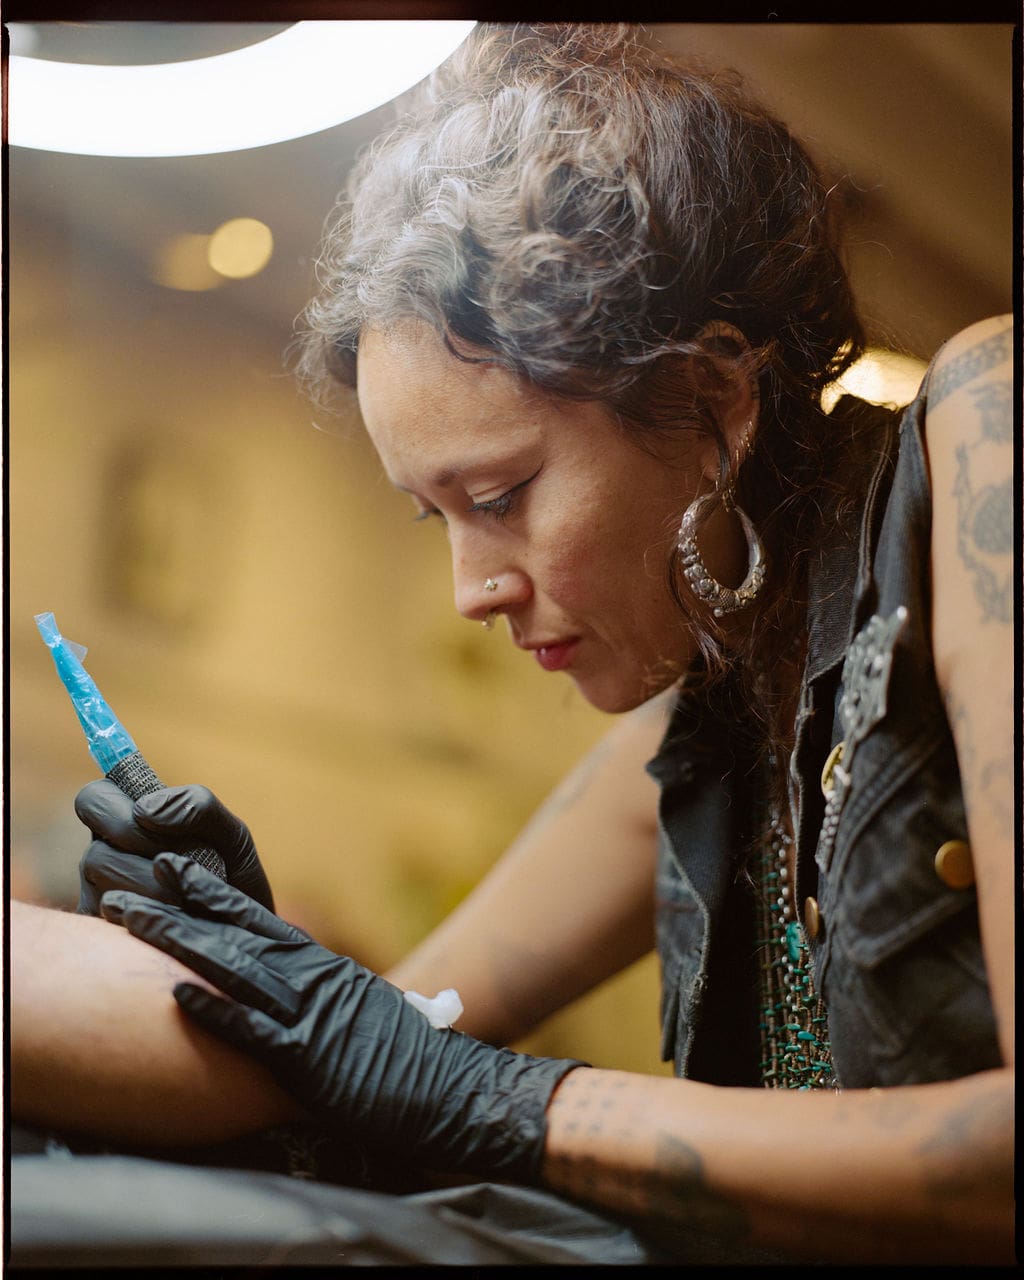 An interview with Tati Compton | Tati tattooing in her LA studio